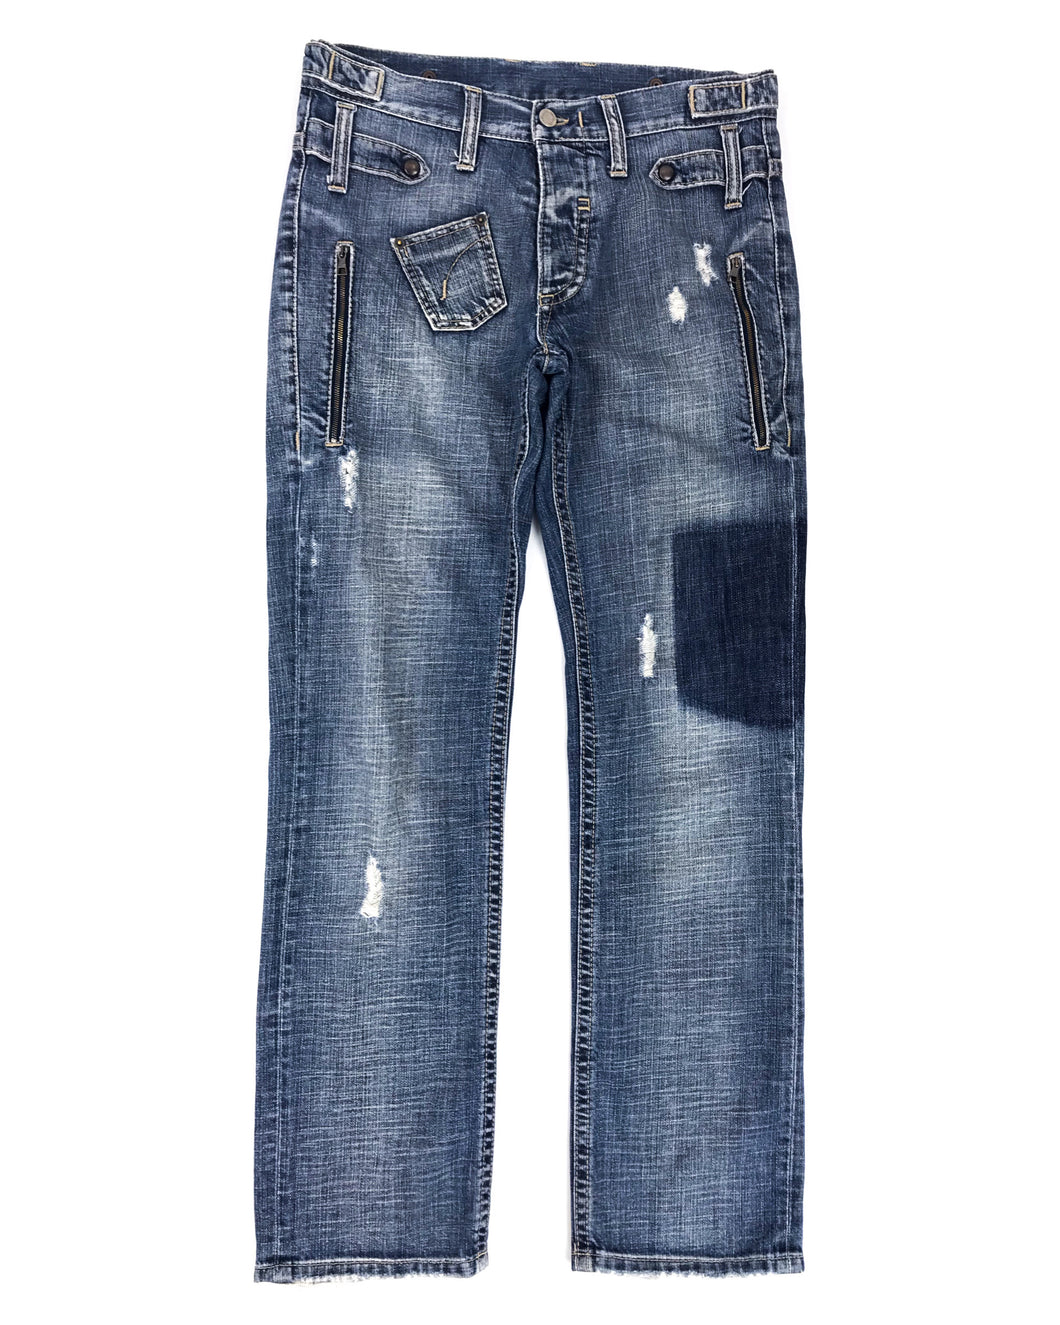 NEIL BARRETT Distressed Denim Jeans (Early 2000’s)(31)